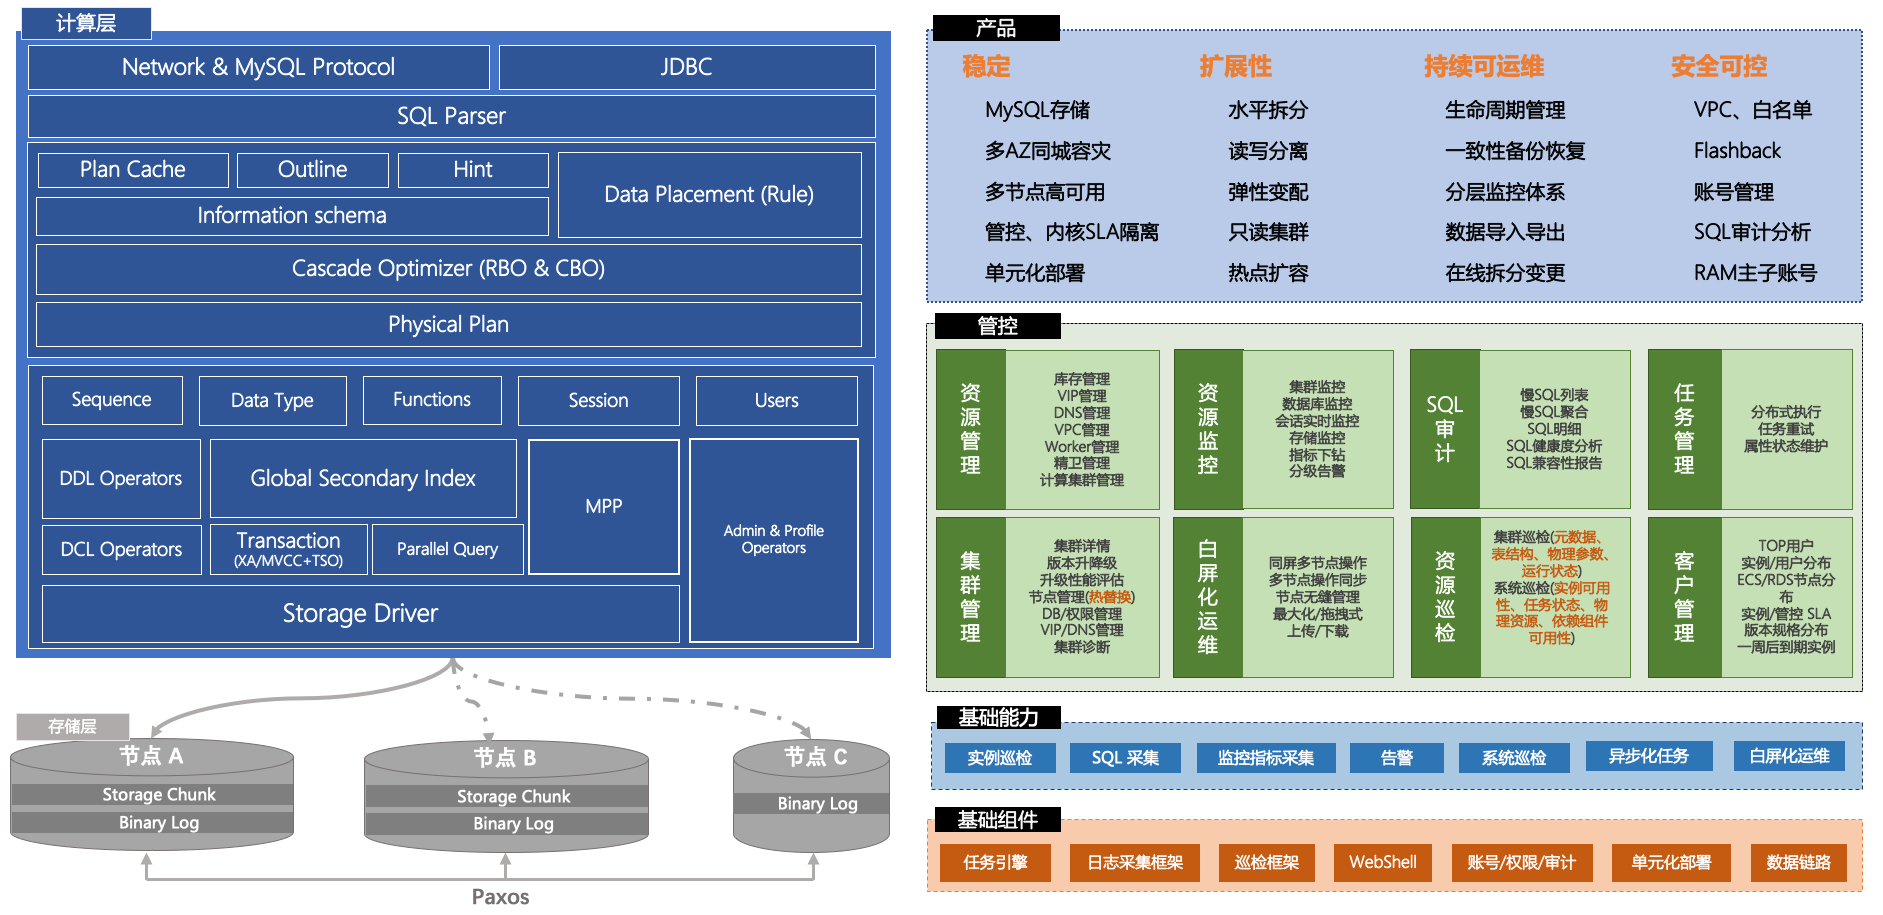 PolarDB-X 产品整体架构图